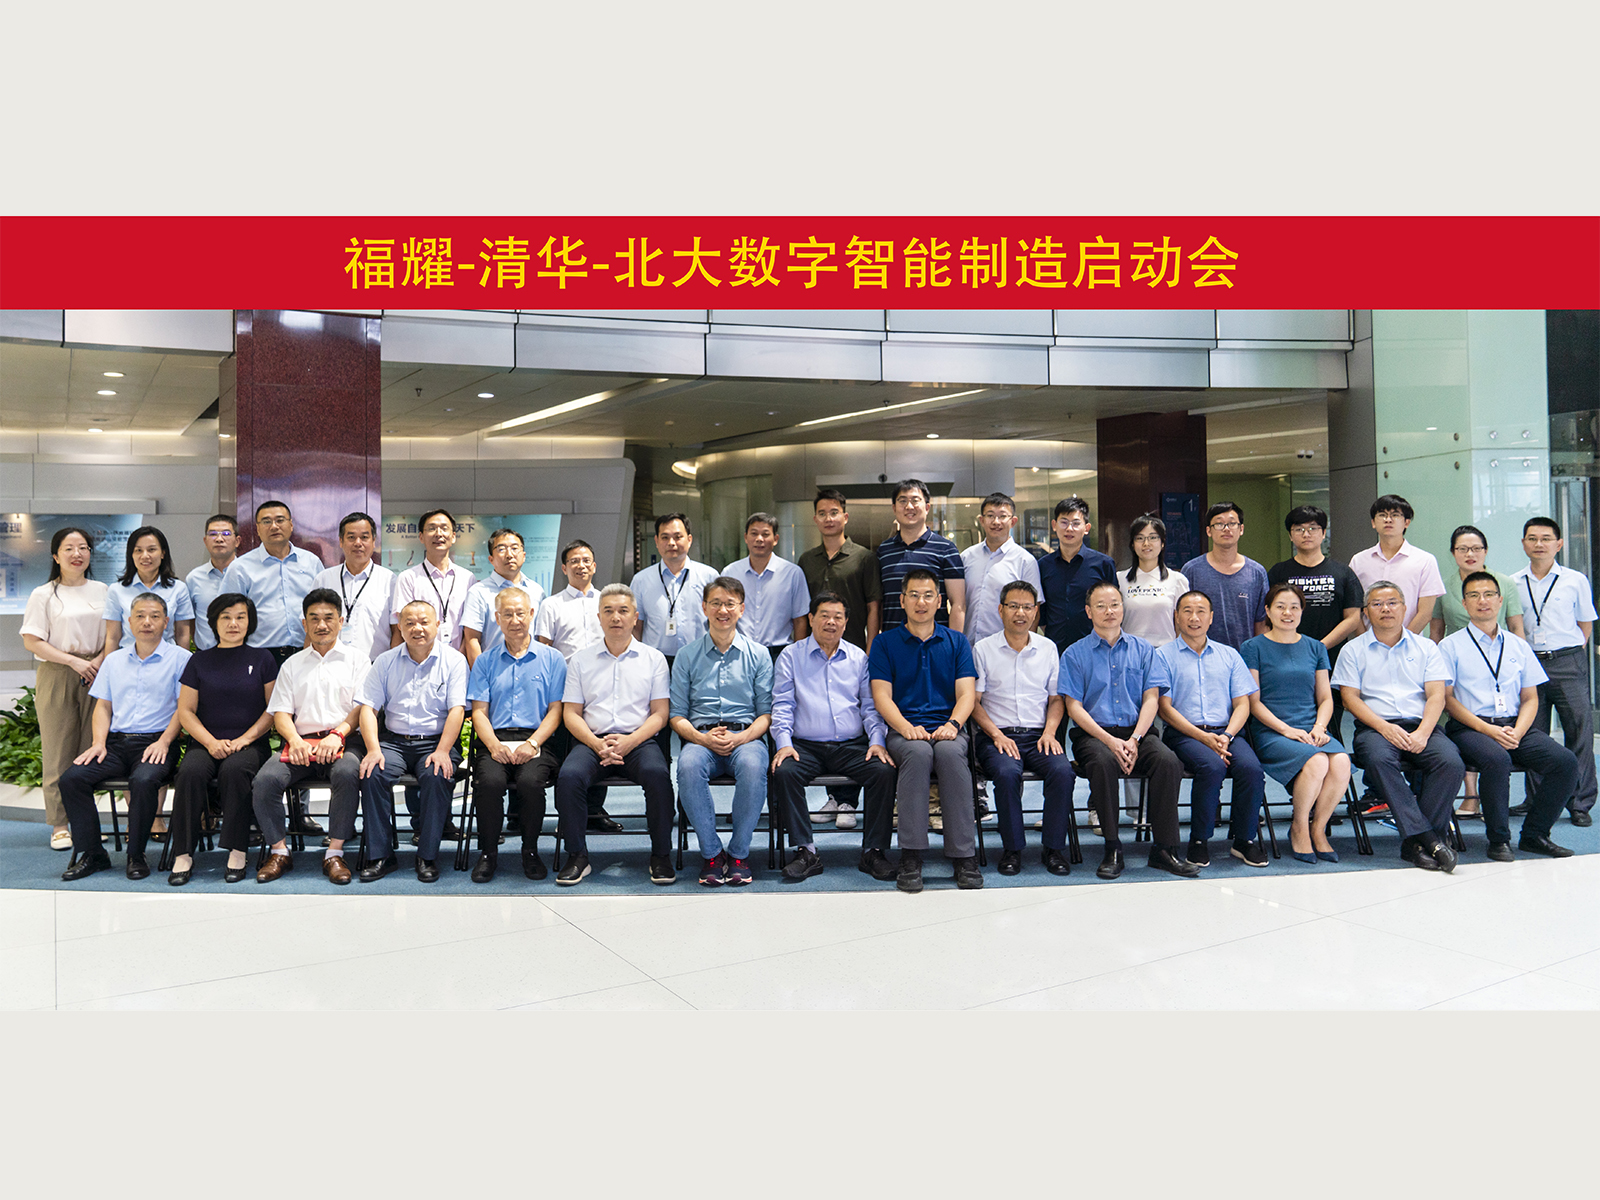 72779太阳集团游戏与清华大学、北京大学组建联合团队，启动数字智能制造创新项目